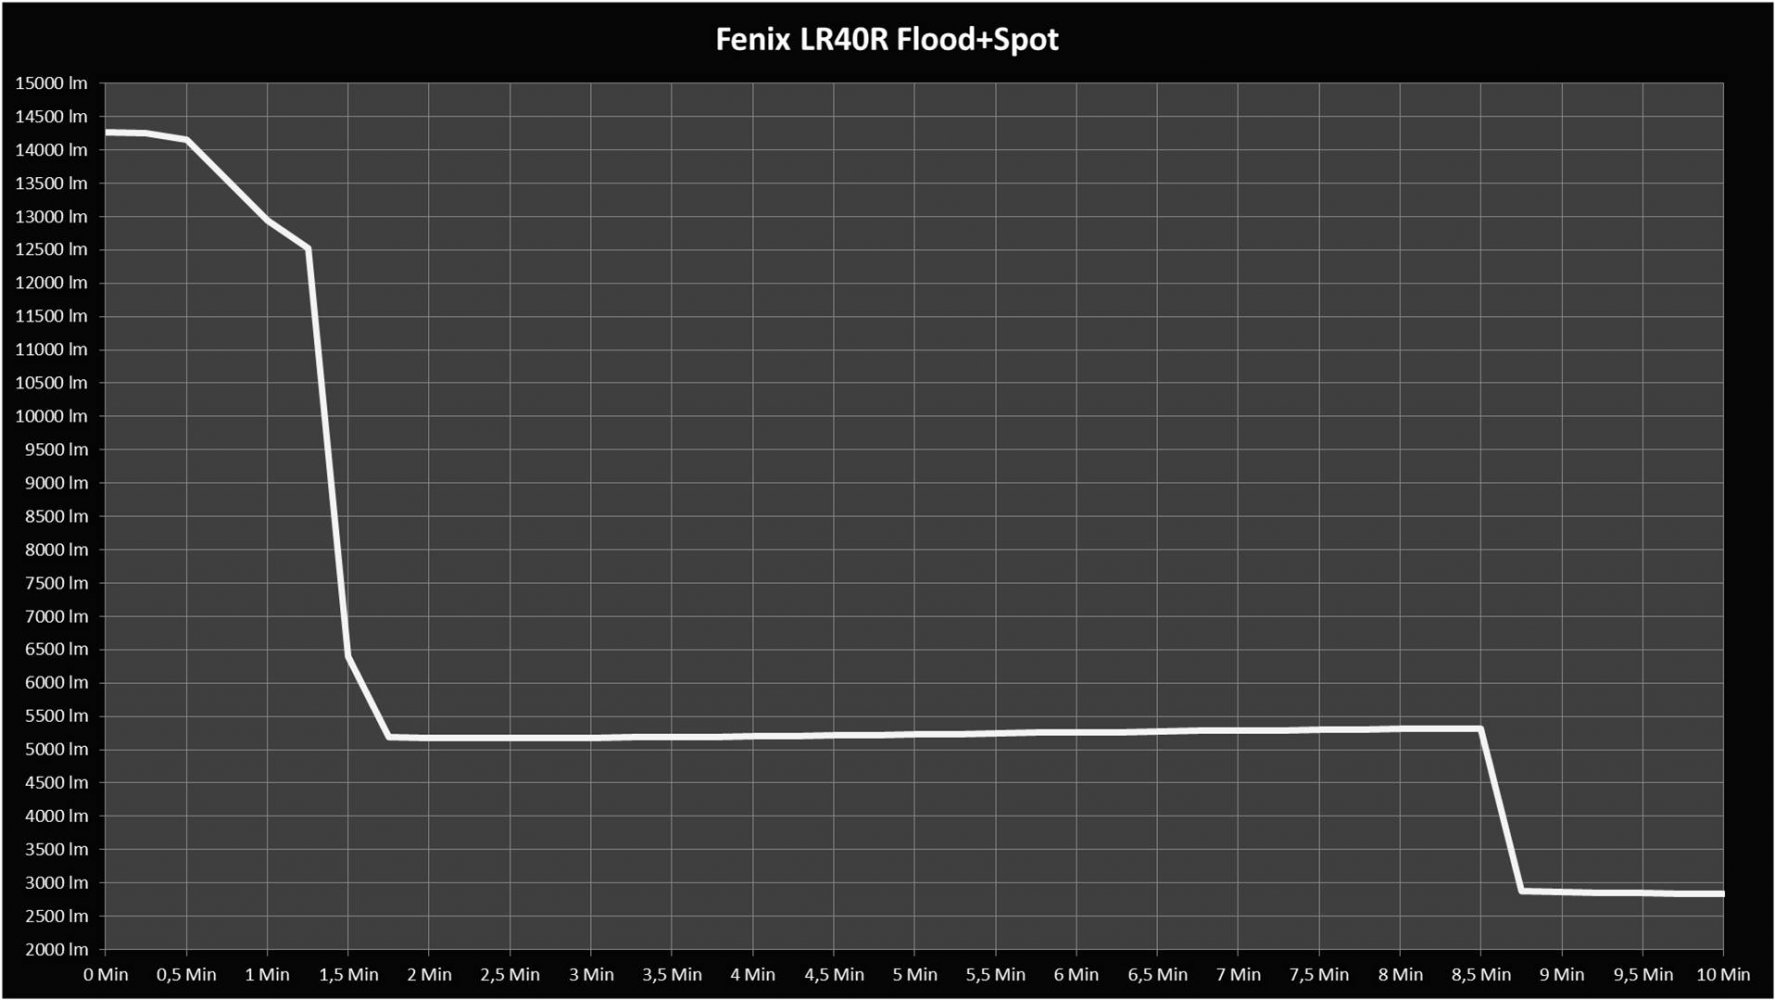 Fenix LR40R Flood + Spot 10min